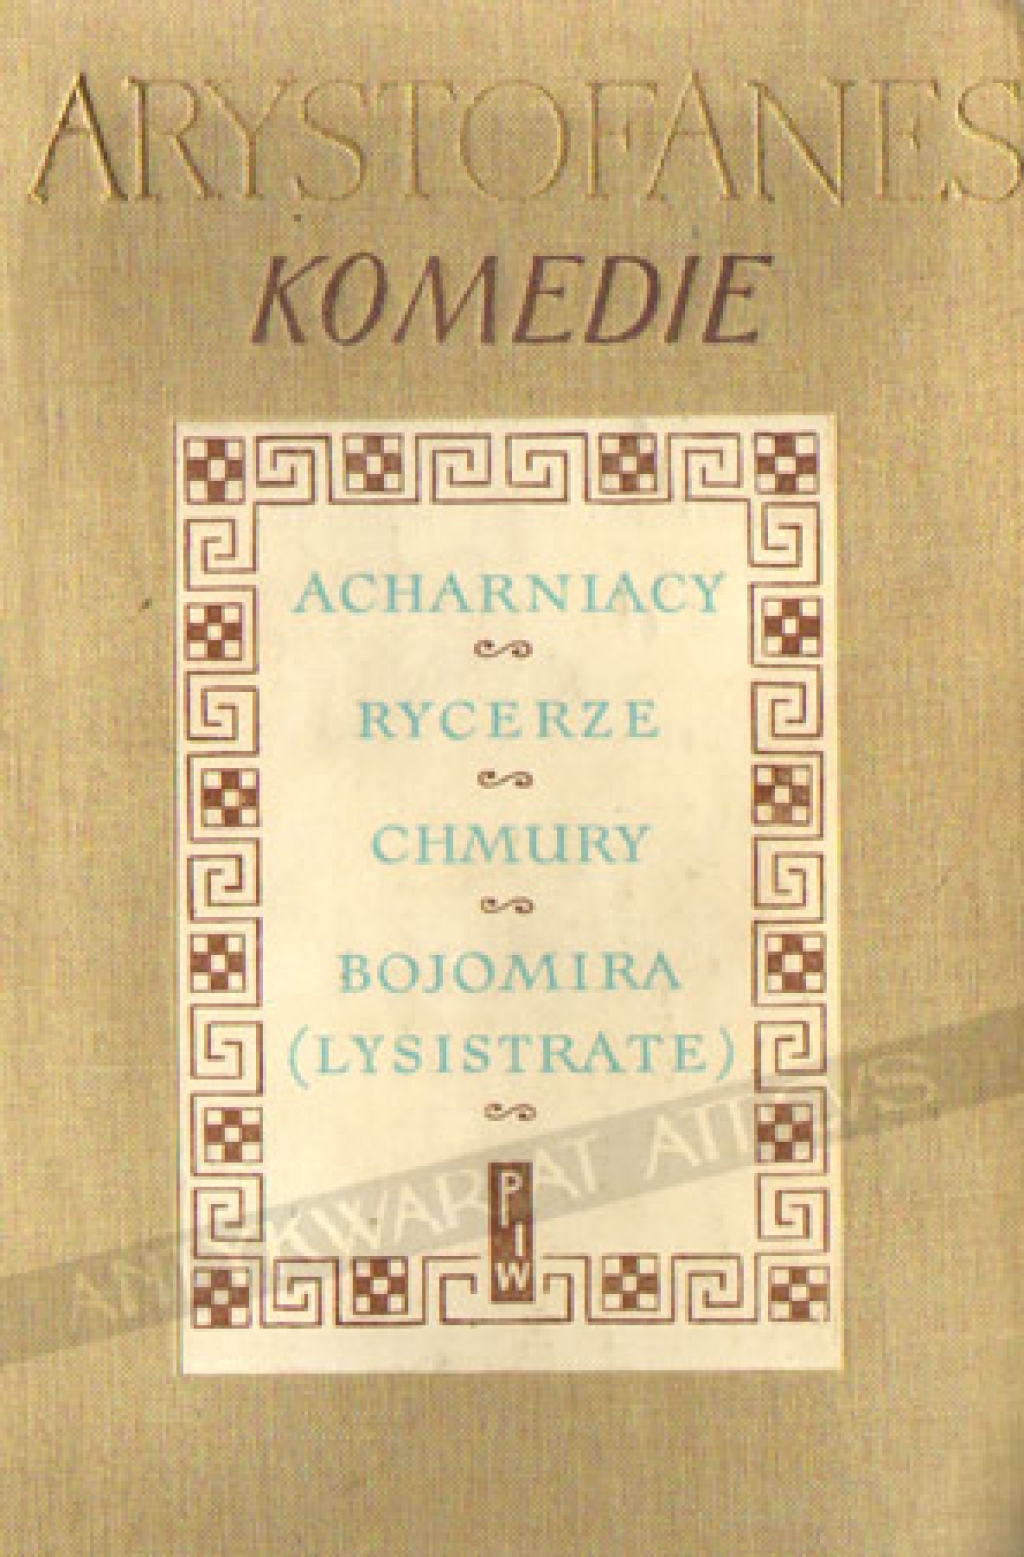 Komedie: Acharniacy, Rycerze, Chmury, Bojomira (Lysistrate)